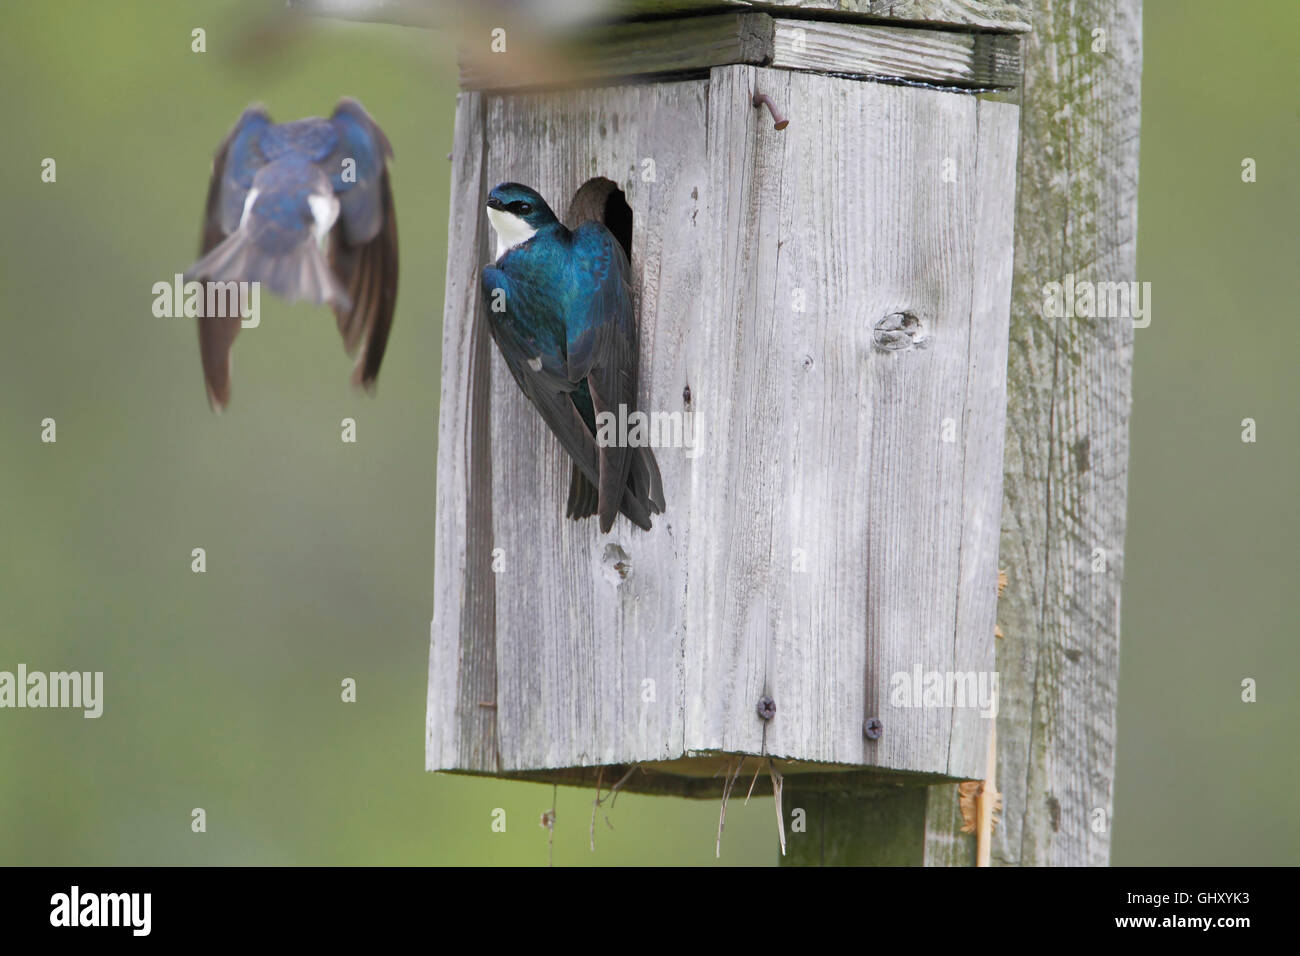 Tree swallow (Tachycineta bicolor) at nest box, Bombay Hook NWR, Delaware, USA Stock Photo